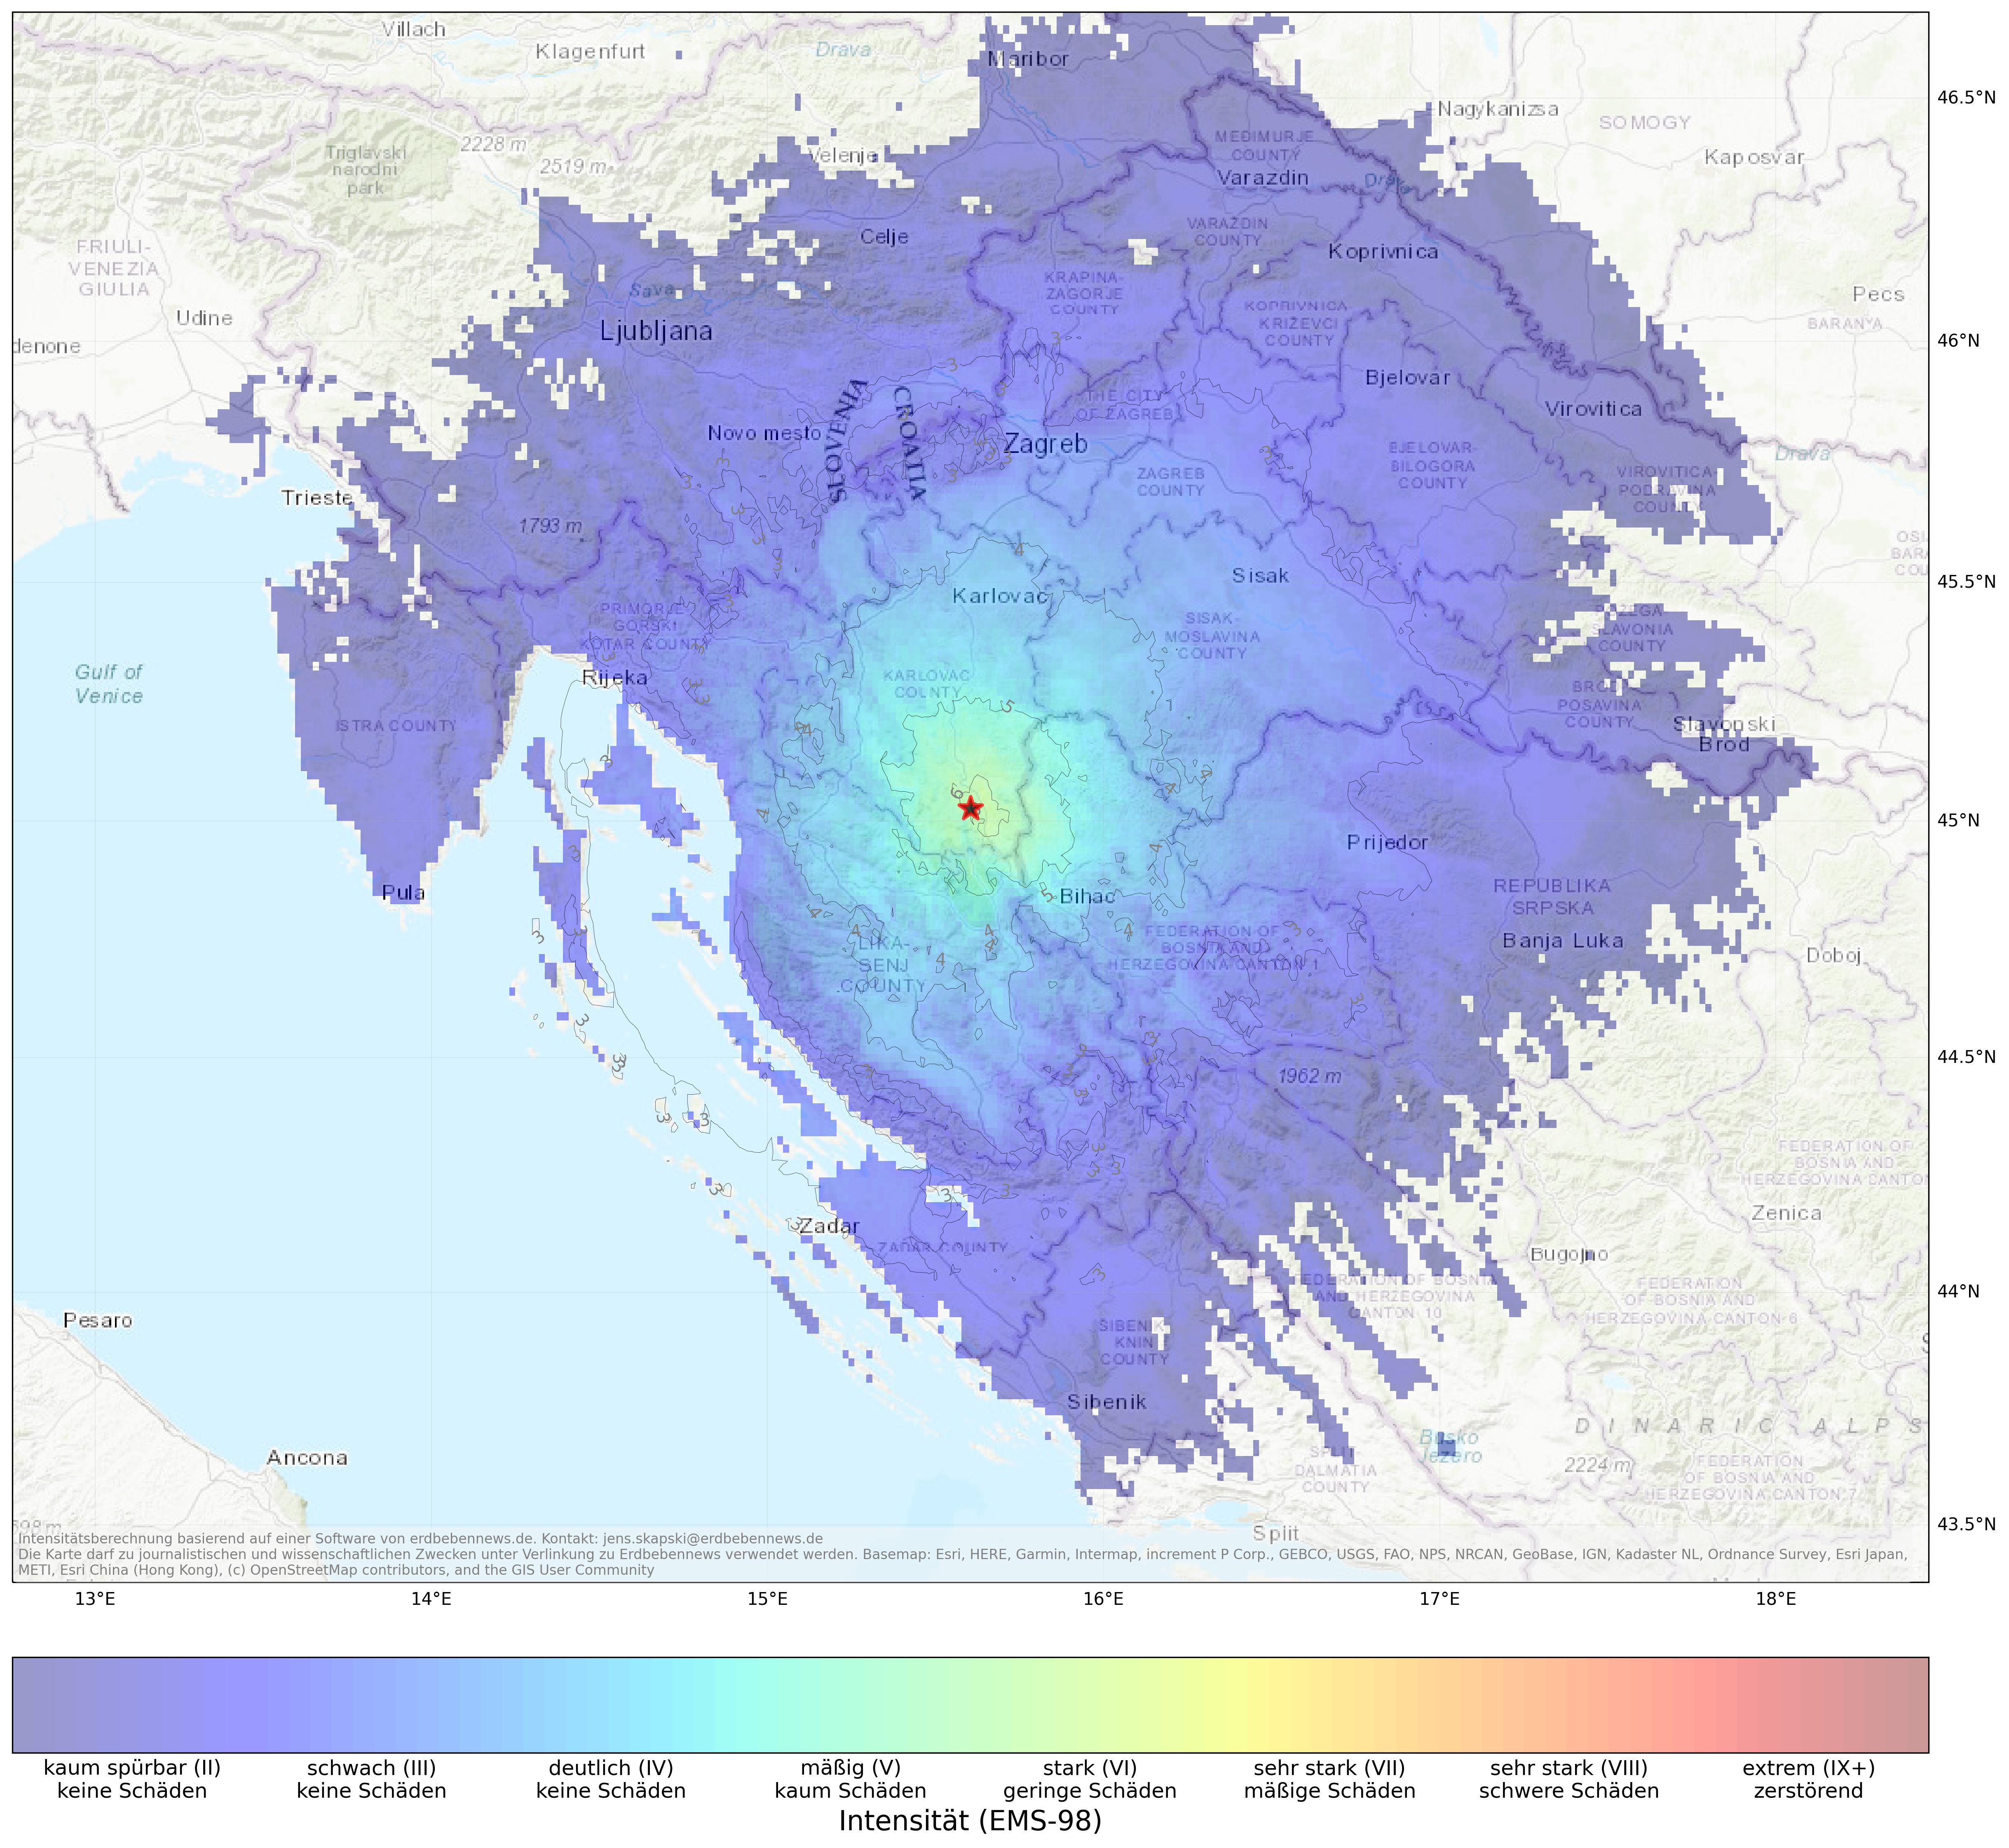 Berechnete Intensität (ShakeMap) des Erdbebens der Stärke 4.8 am 1. Mai, 5:38 Uhr in Kroatien